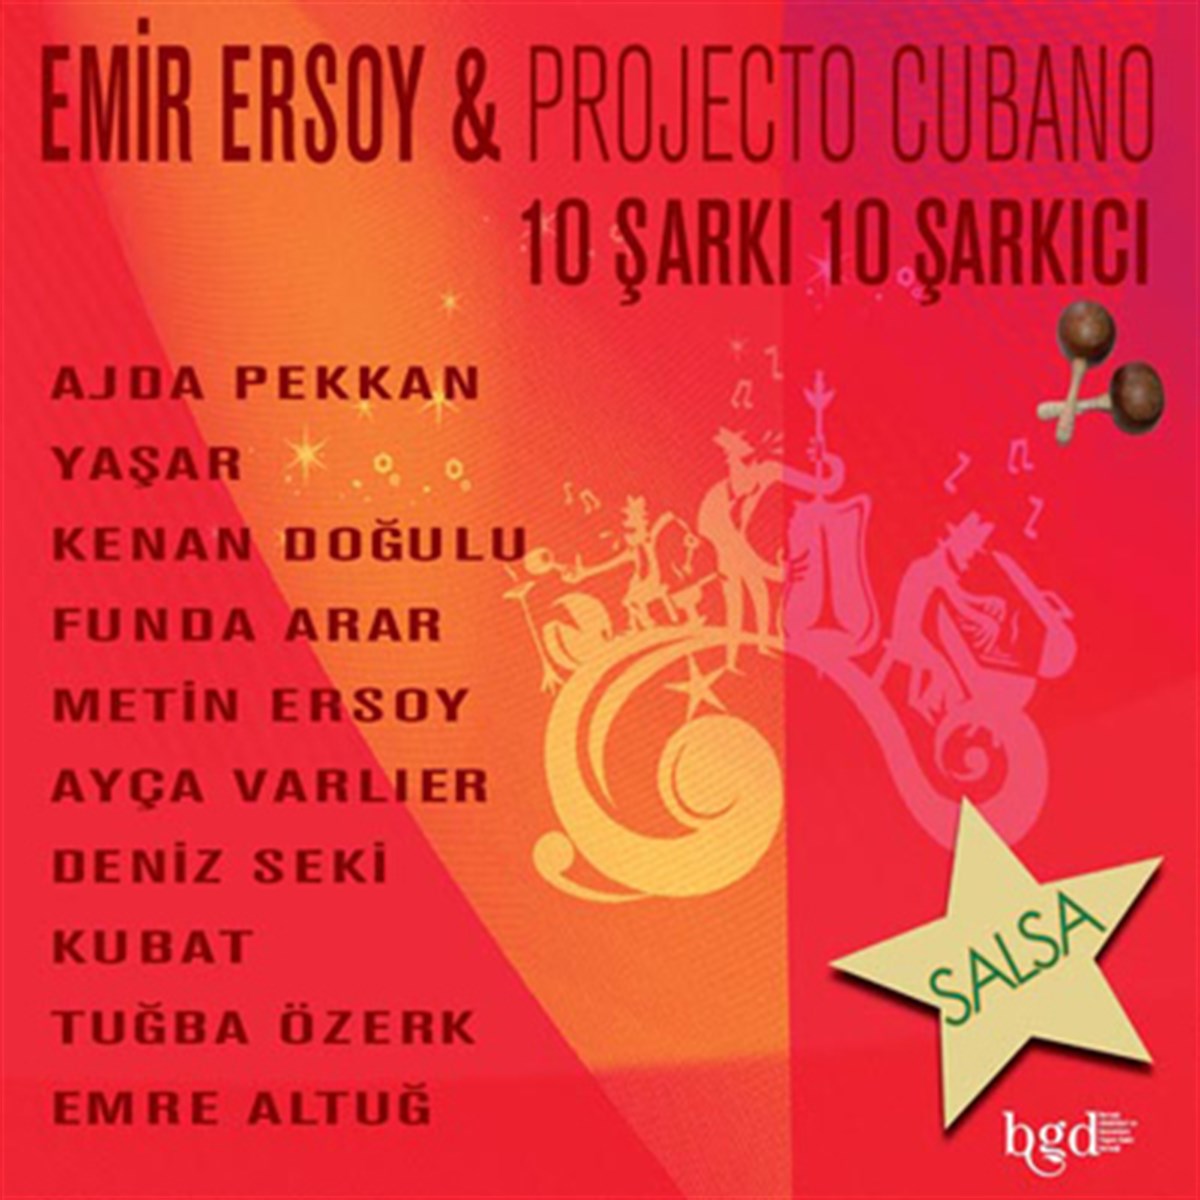 Emir Ersoy, Projecto Cubano 10 Şarkı 10 Şarkıcı